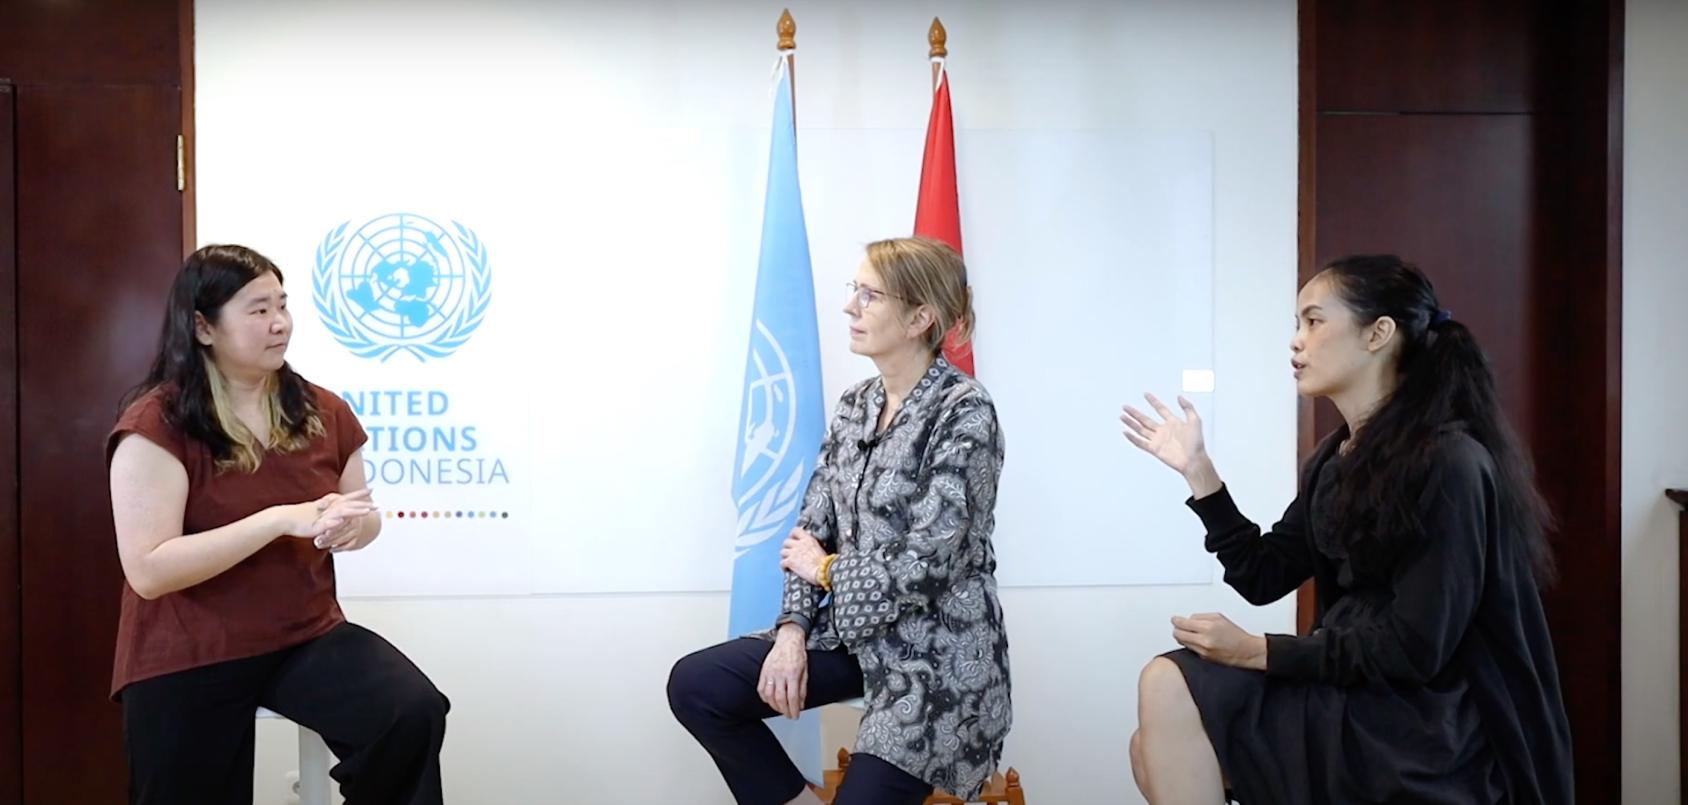 Tres mujeres mantienen una discusión frente a las banderas y el logotipo de las Naciones Unidas.